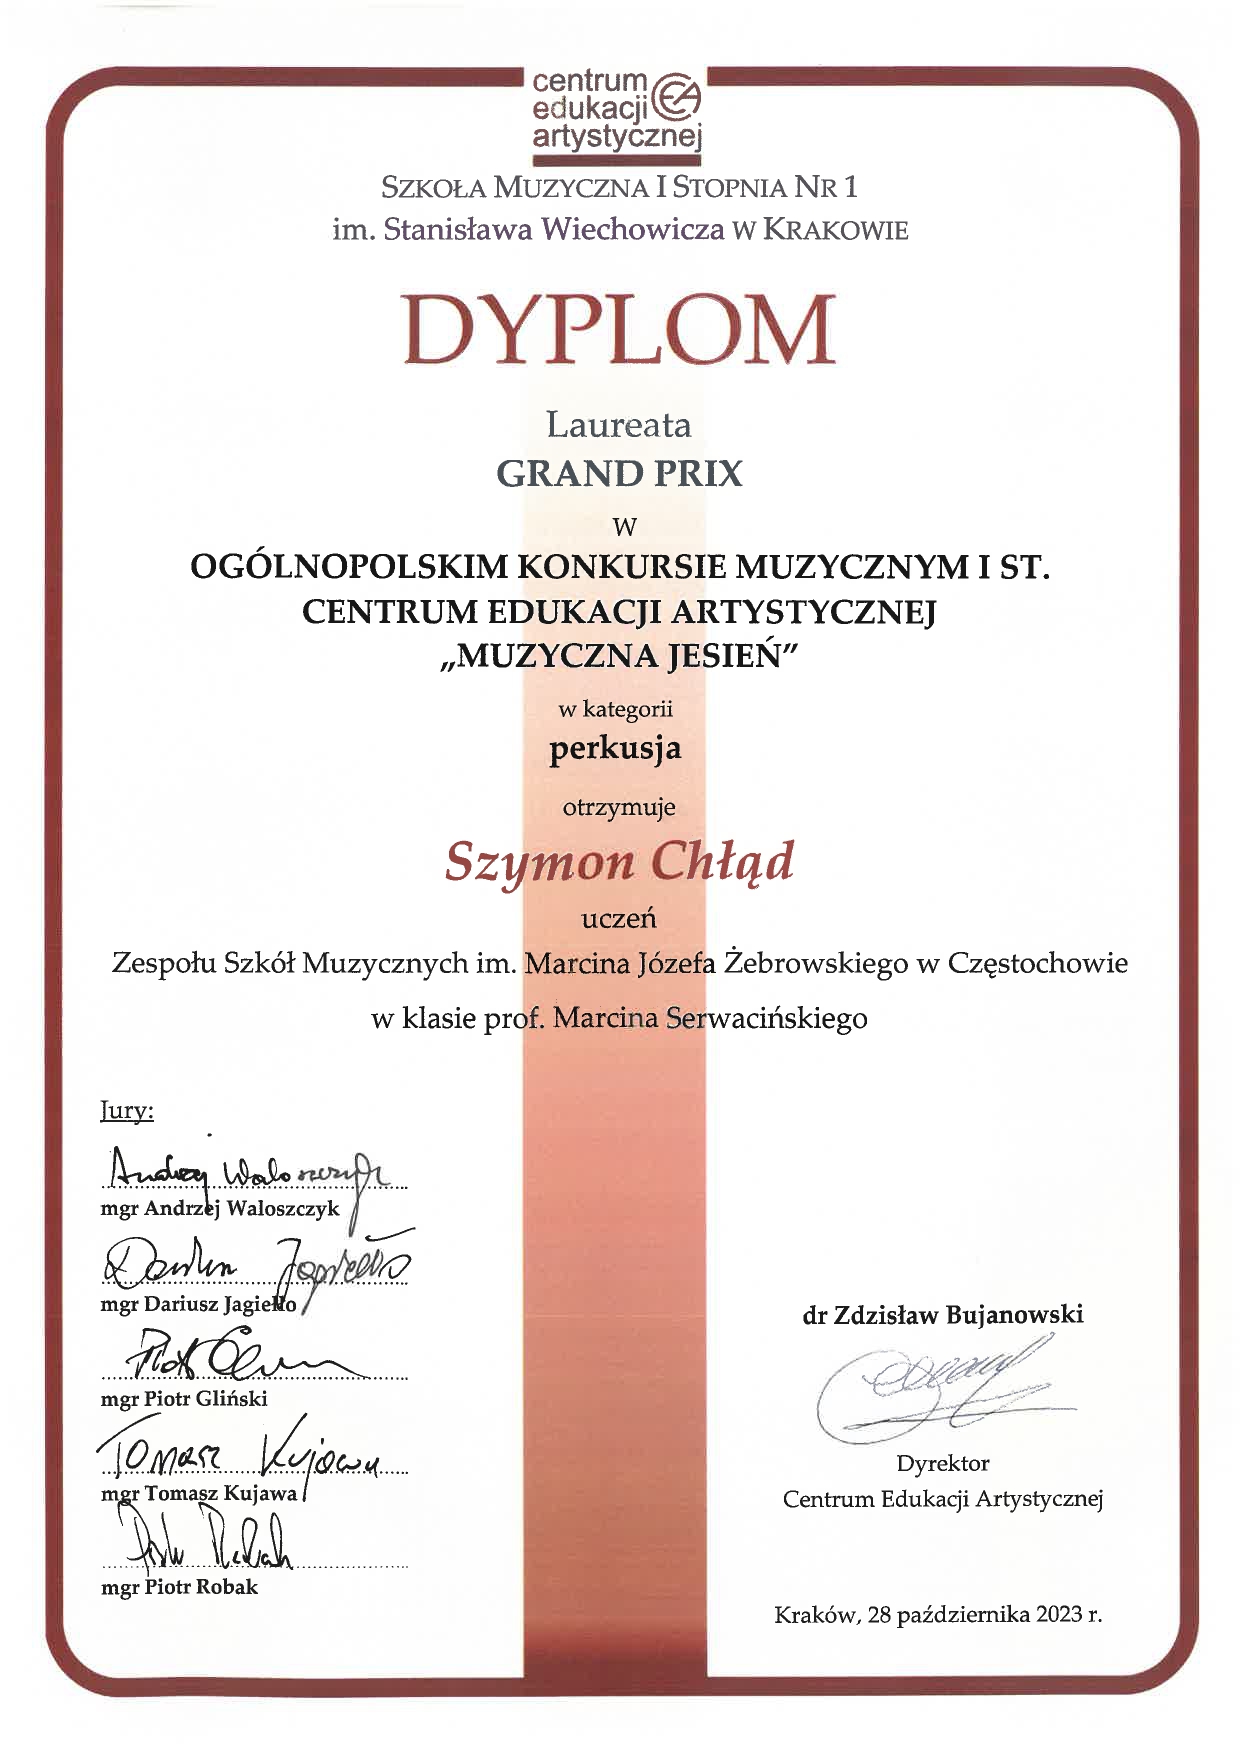 Dyplom laureata GRAND PRIX dla Szymona Chłąda w Ogólnopolskim Konkursie Muzycznym Centrum Edukacji Artystycznej I stopnia "Muzyczna Jesień"